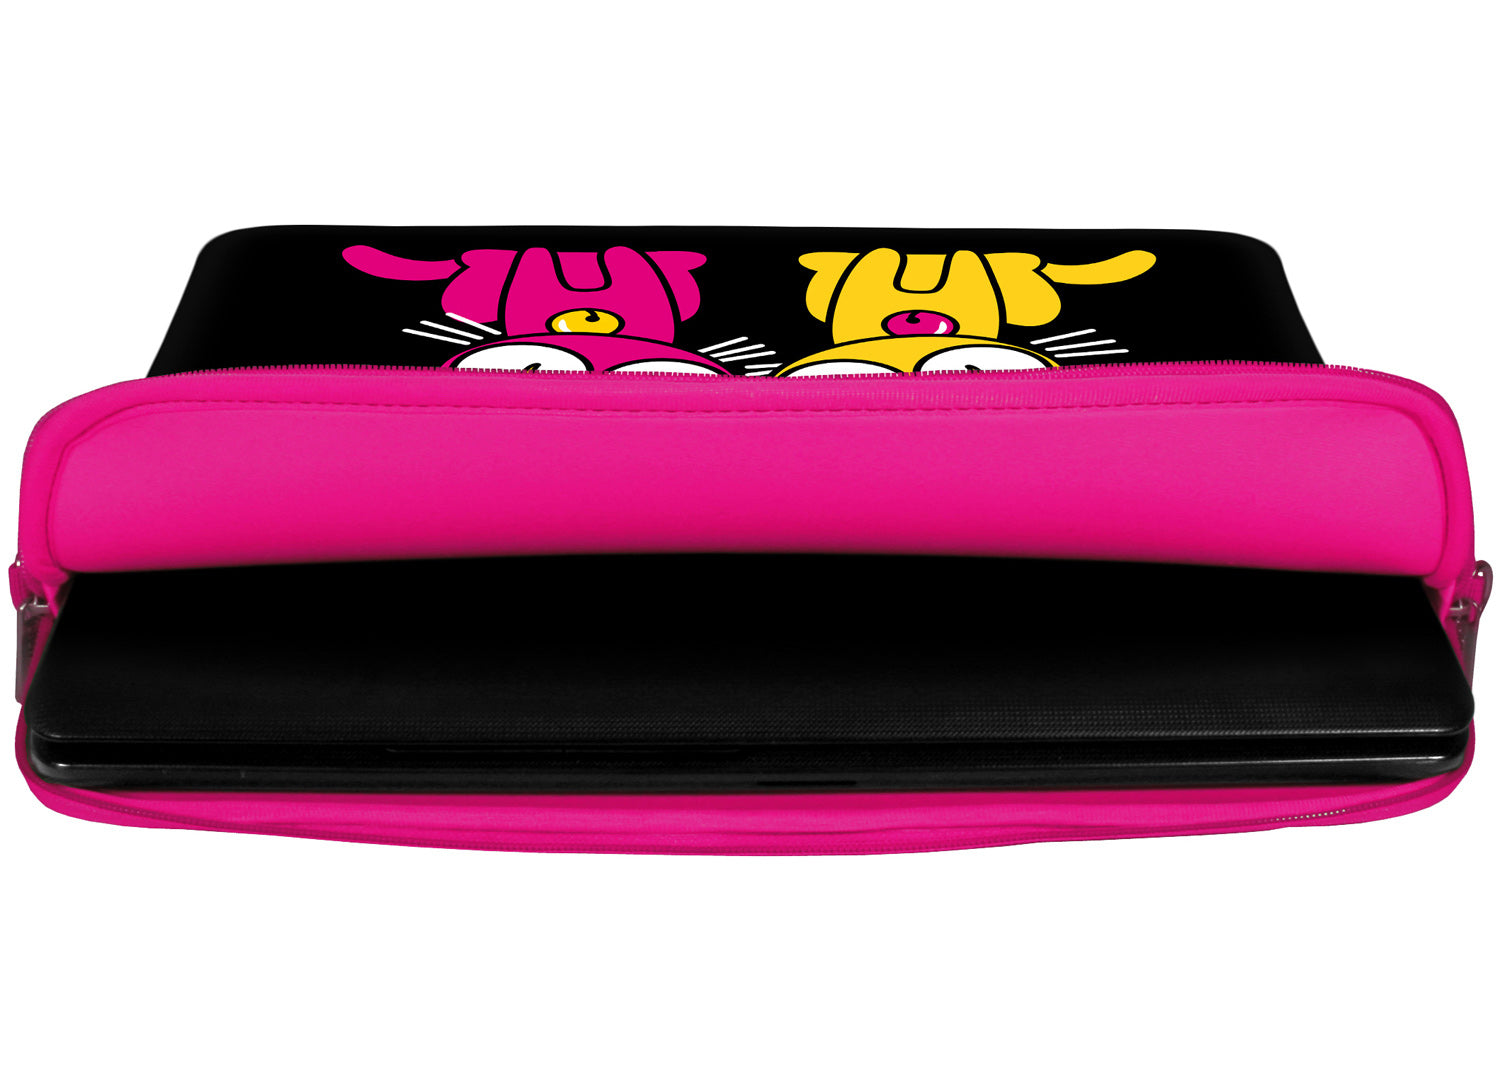 Innenansicht mit Schutzlippen der LS144 Kitty to Go Designer Laptop Tasche in pink aus wasserabweisendem Neopren